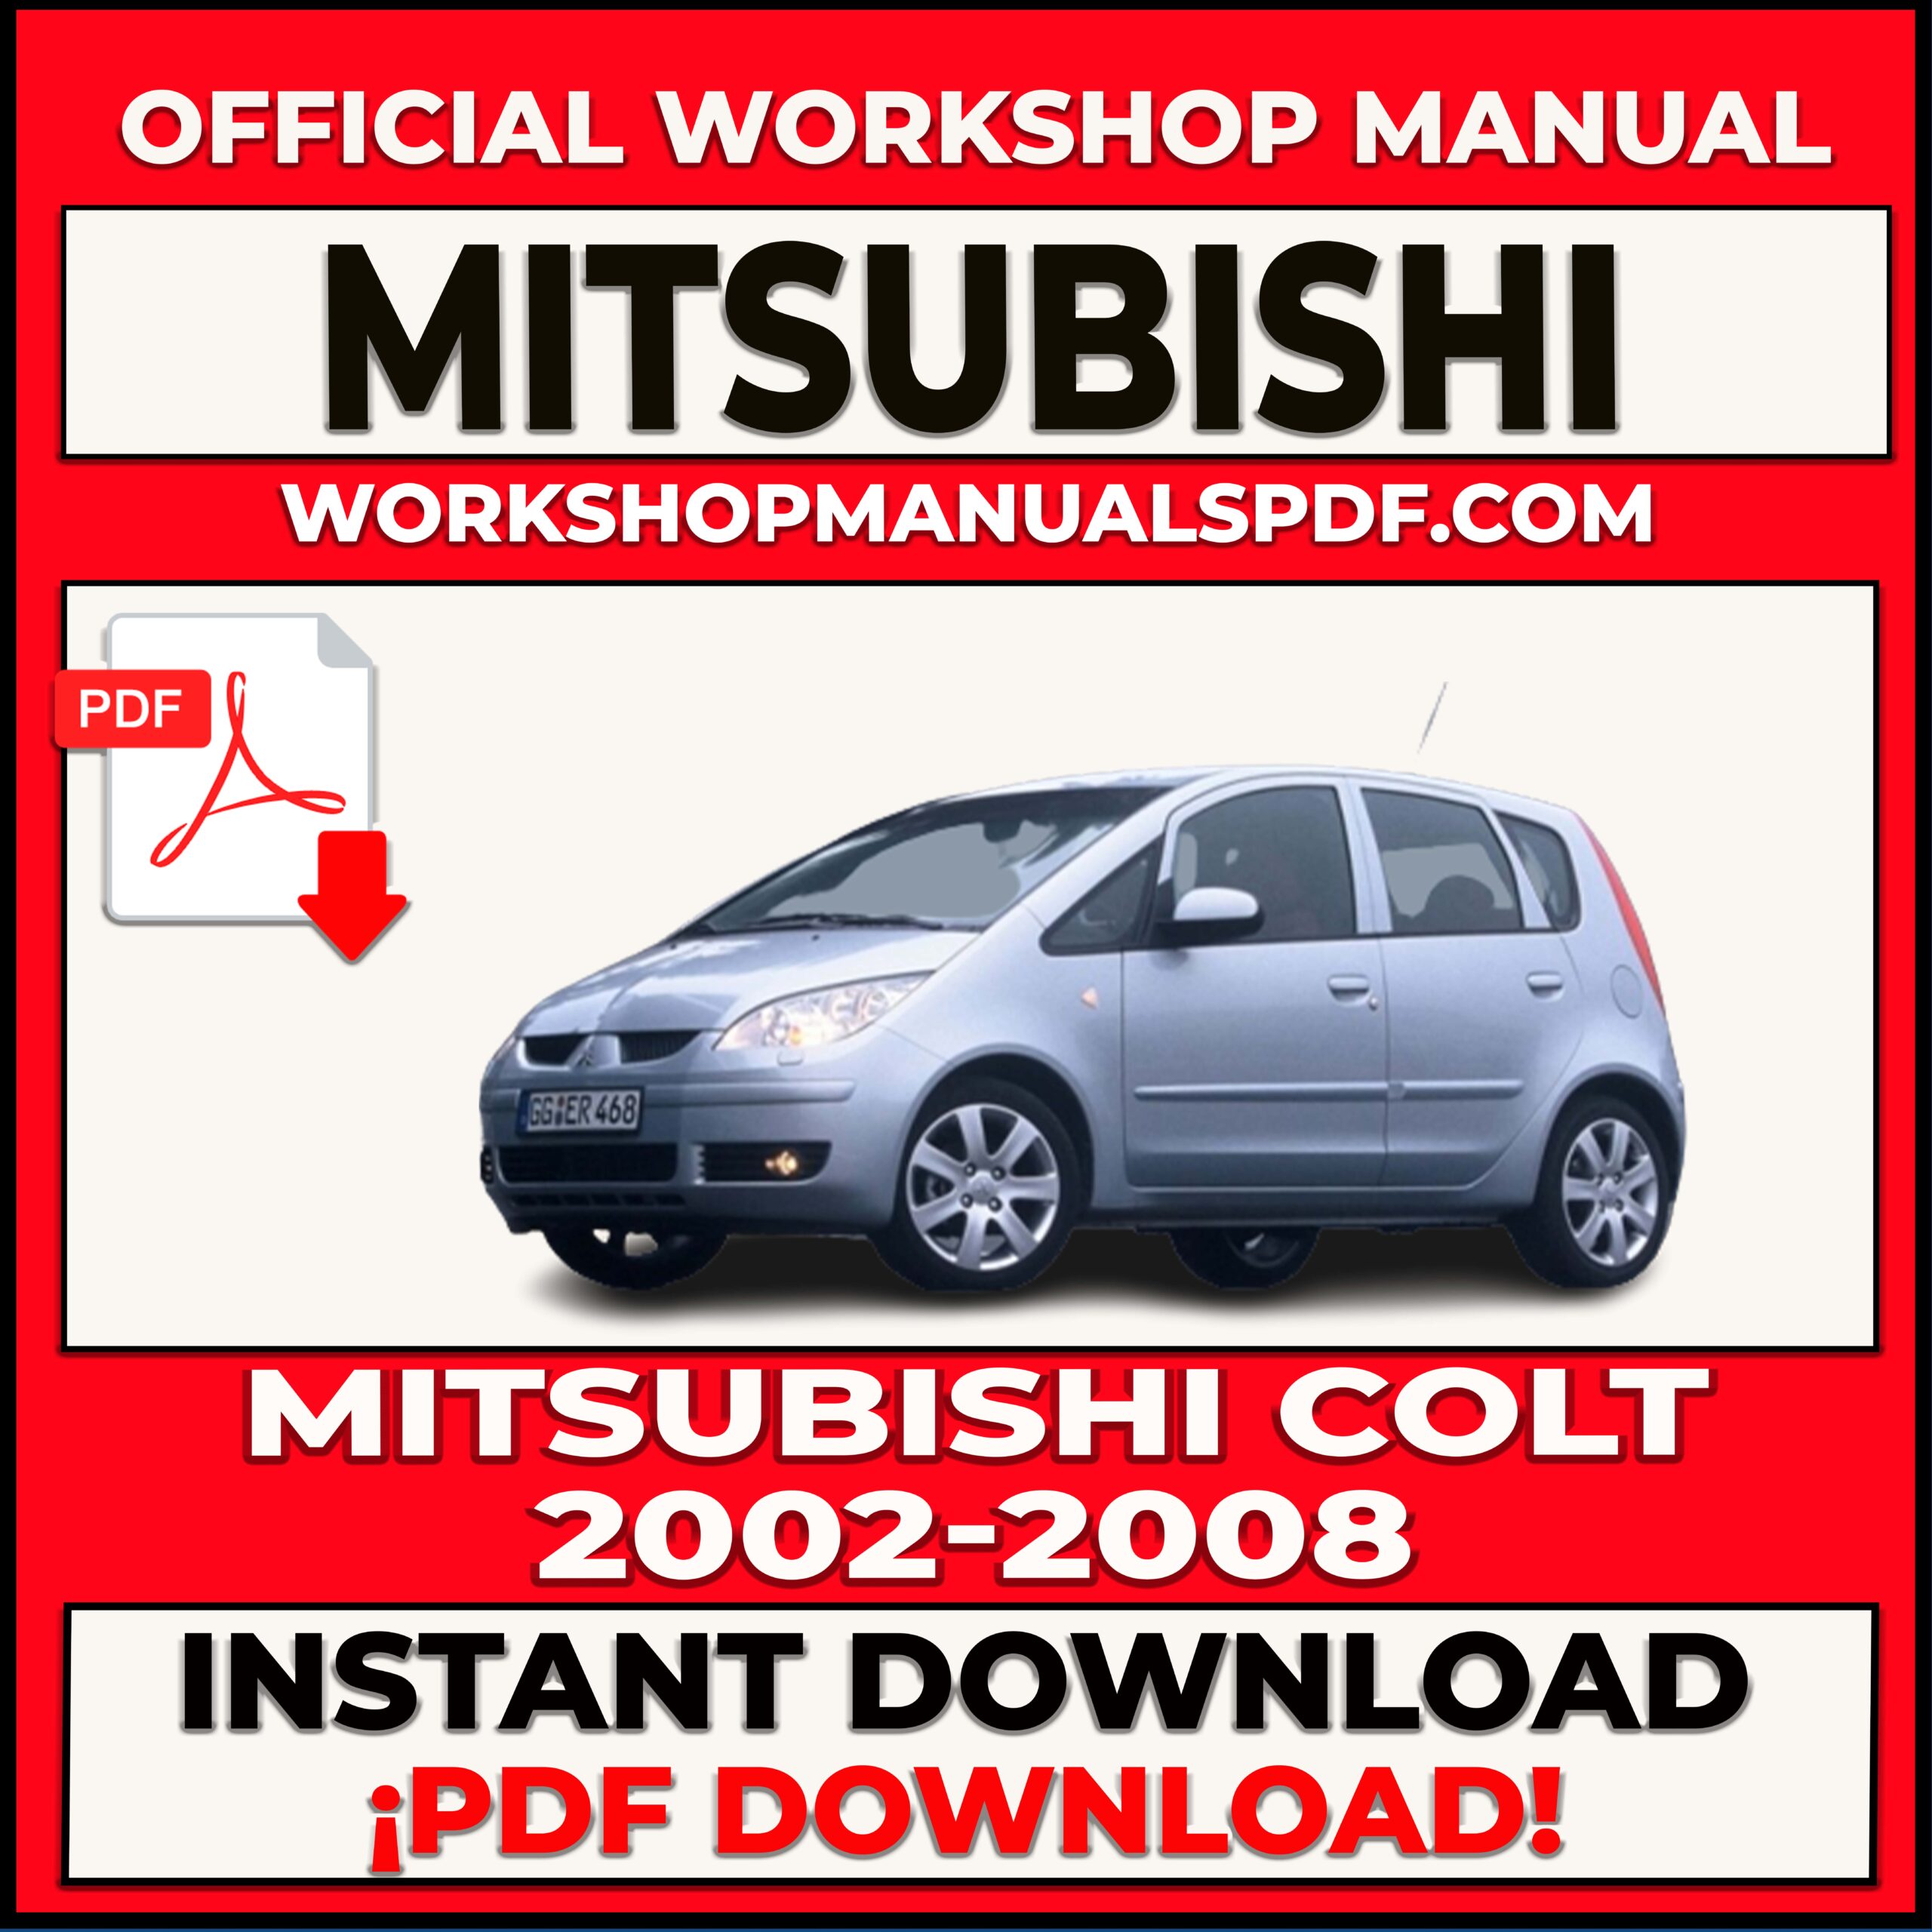 Mitsubishi Colt 2002-2008 Workshop Repair Manual